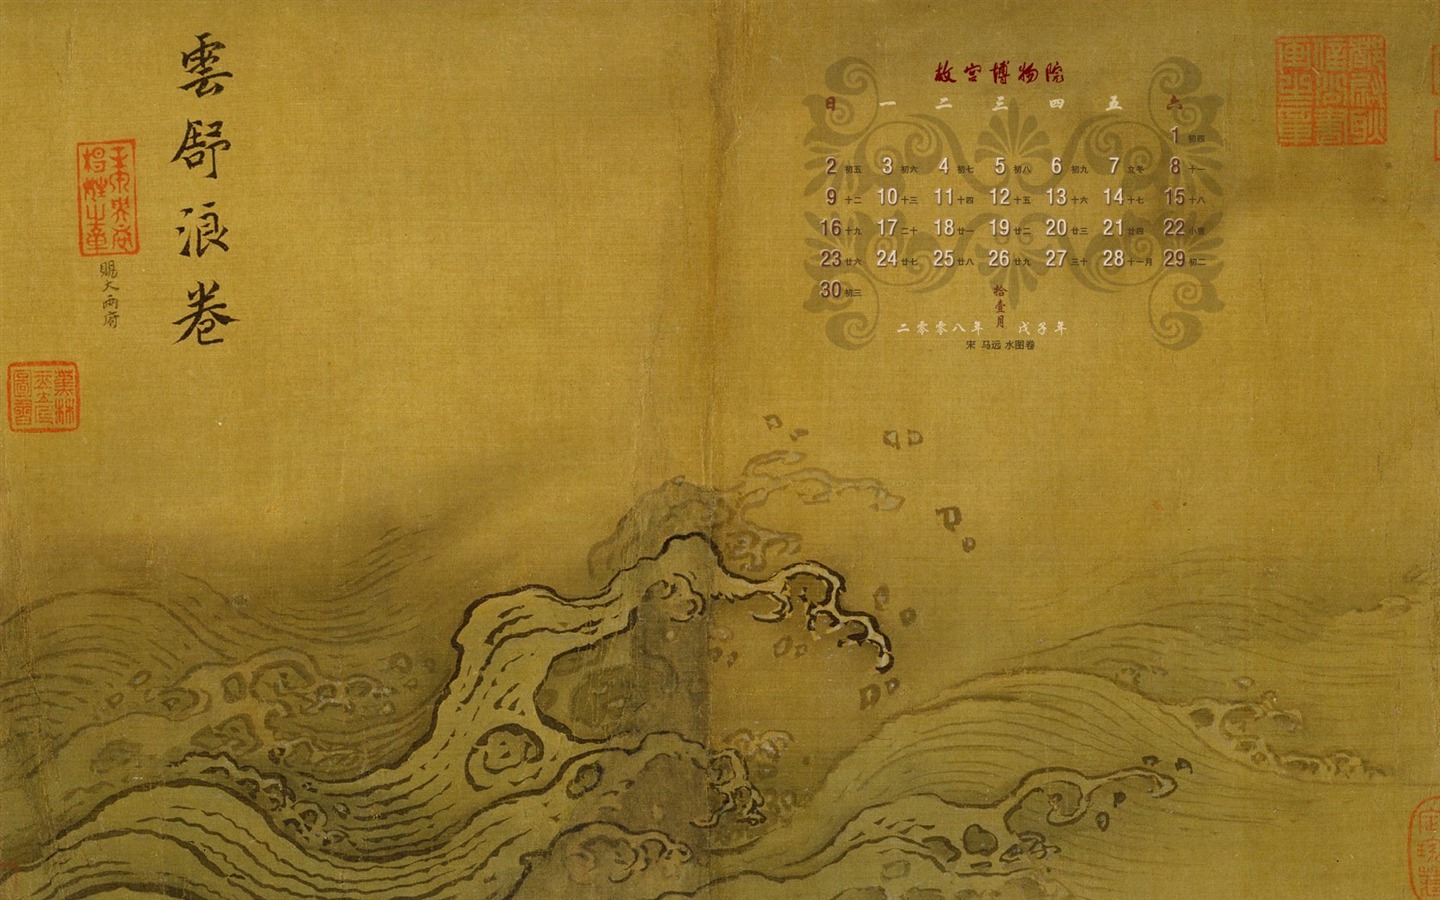 北京故宫博物院 文物展壁纸(二)21 - 1440x900